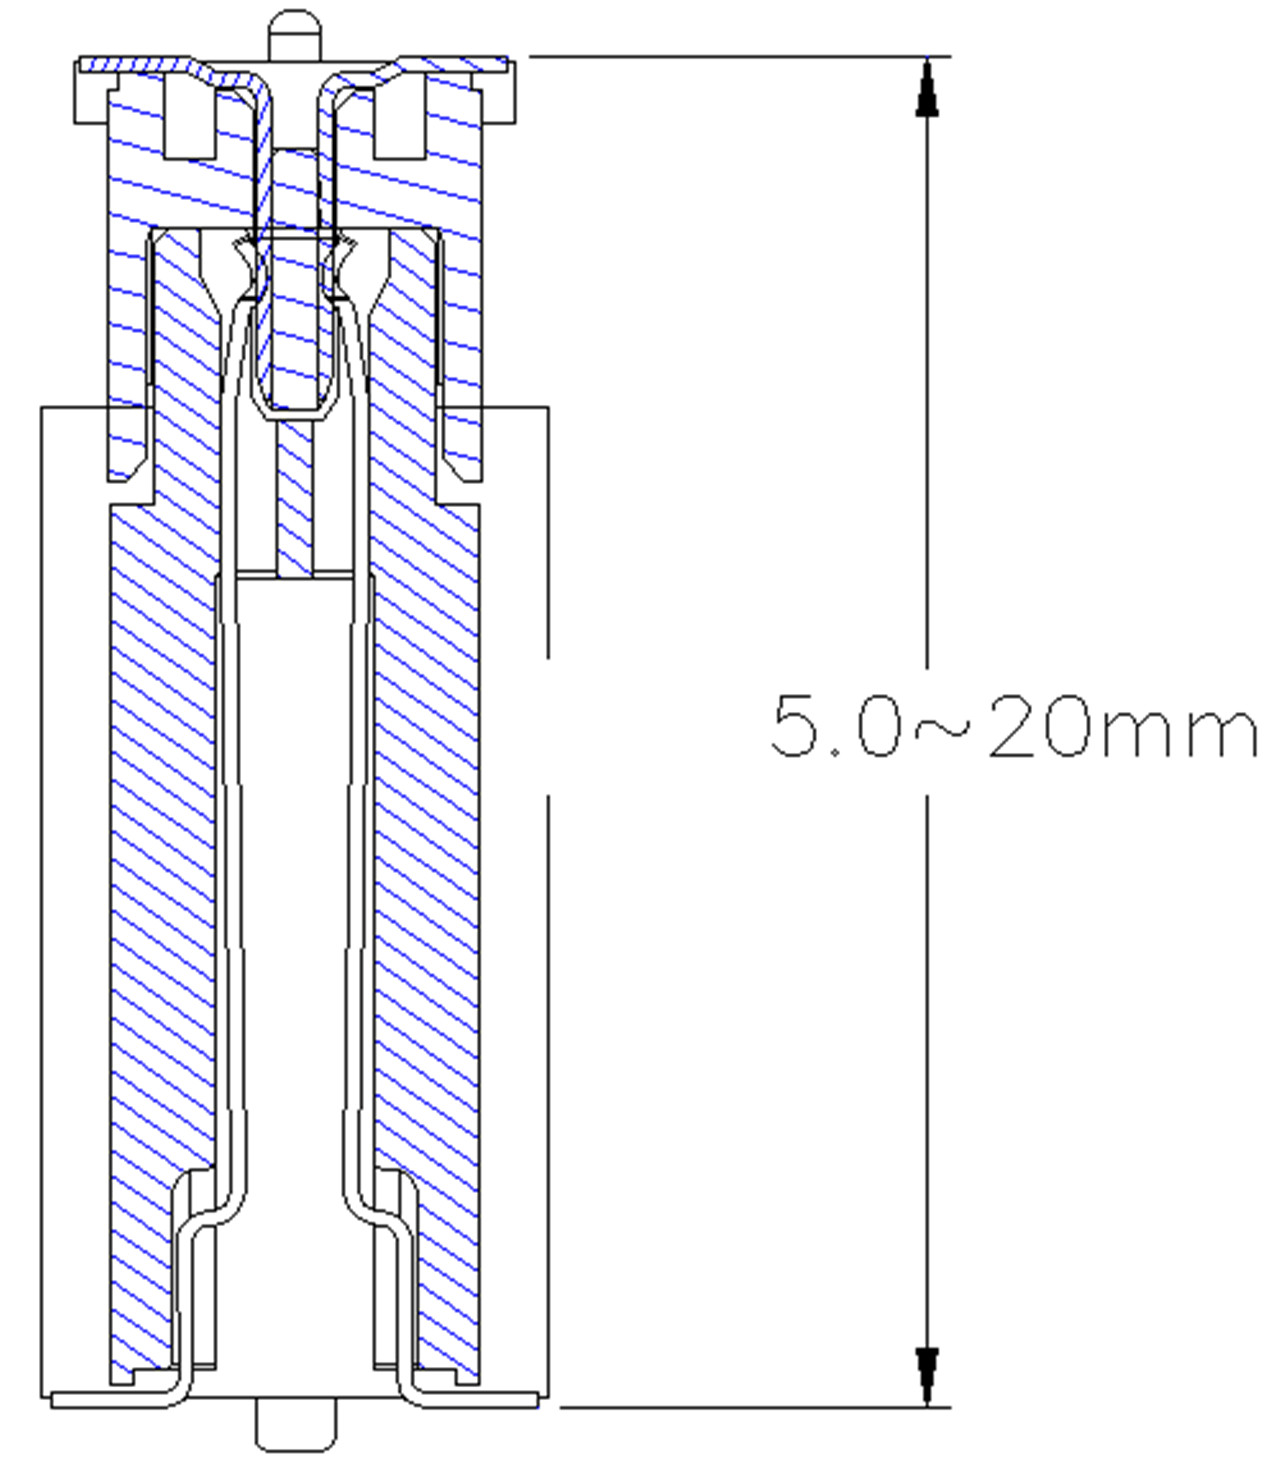 0,8 mm-ko plaka-plaka konektorea - 7,7 mm-ko altuera gizonezkoa (6)